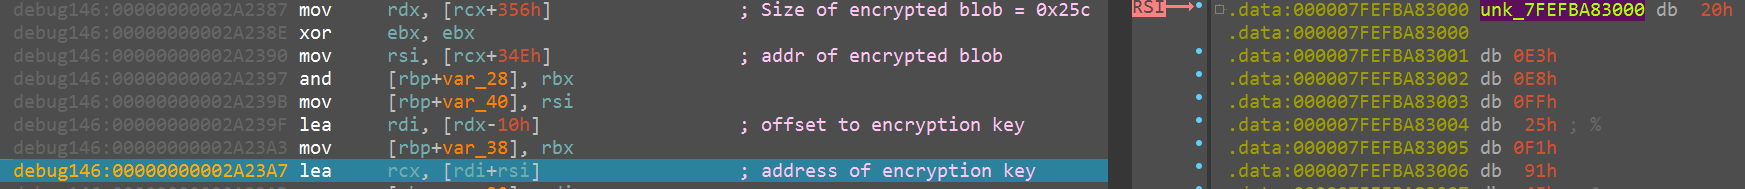 画像10はIcedIDの第2ステージの暗号鍵のスクリーンショットです。ハイライト表示されているのは暗号鍵のアドレスで、このアドレスは「offset to encryption key」というコメントのある行の下に表示されています。